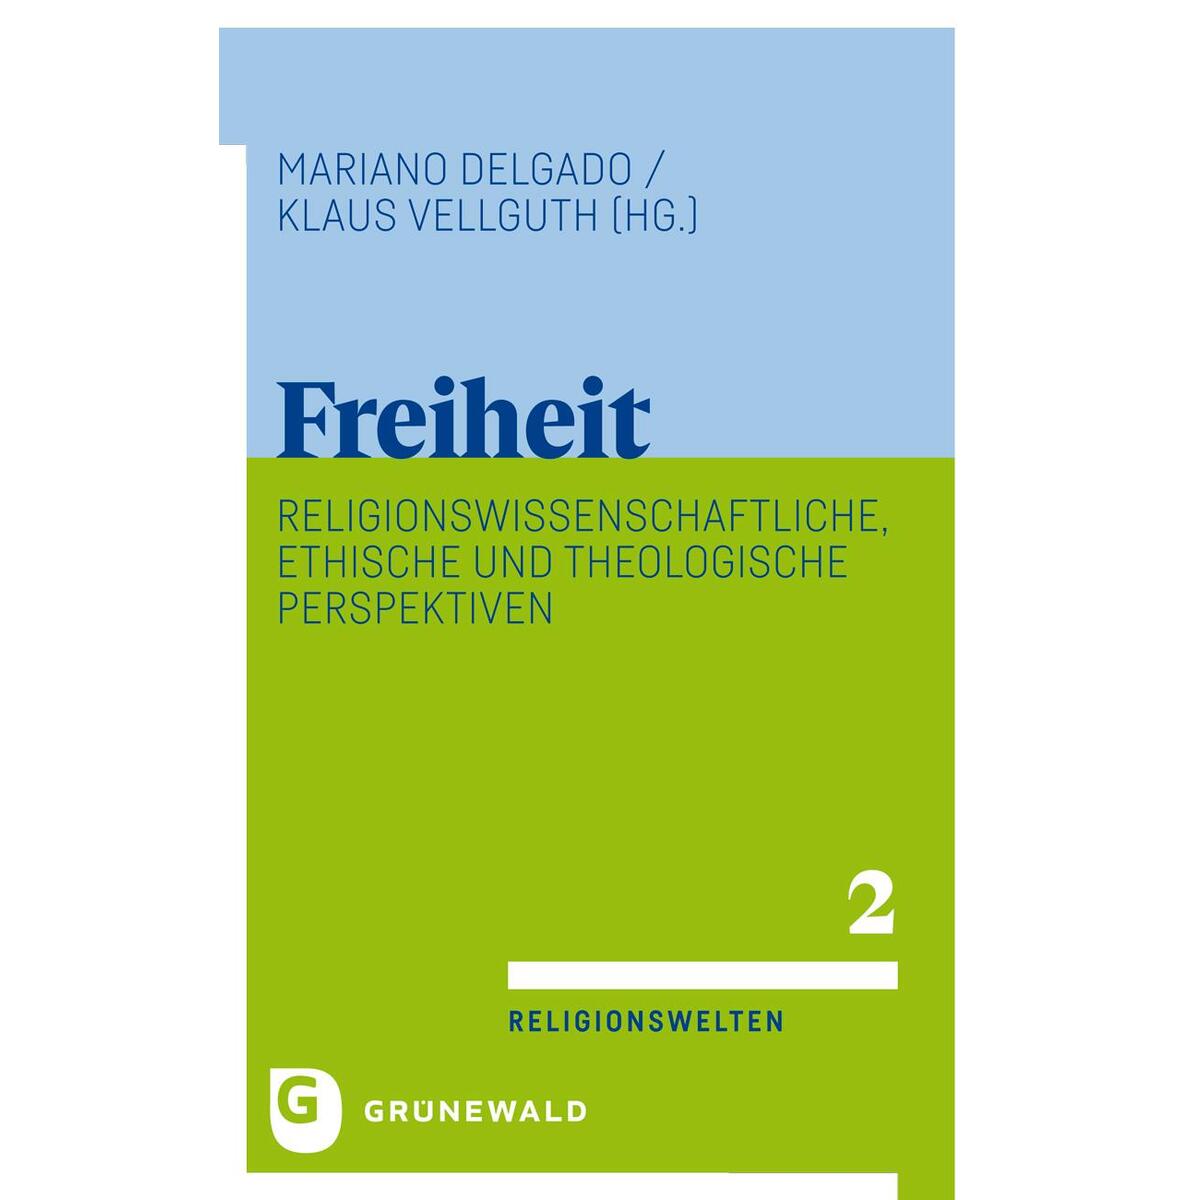 Freiheit von Matthias-Grünewald-Verlag